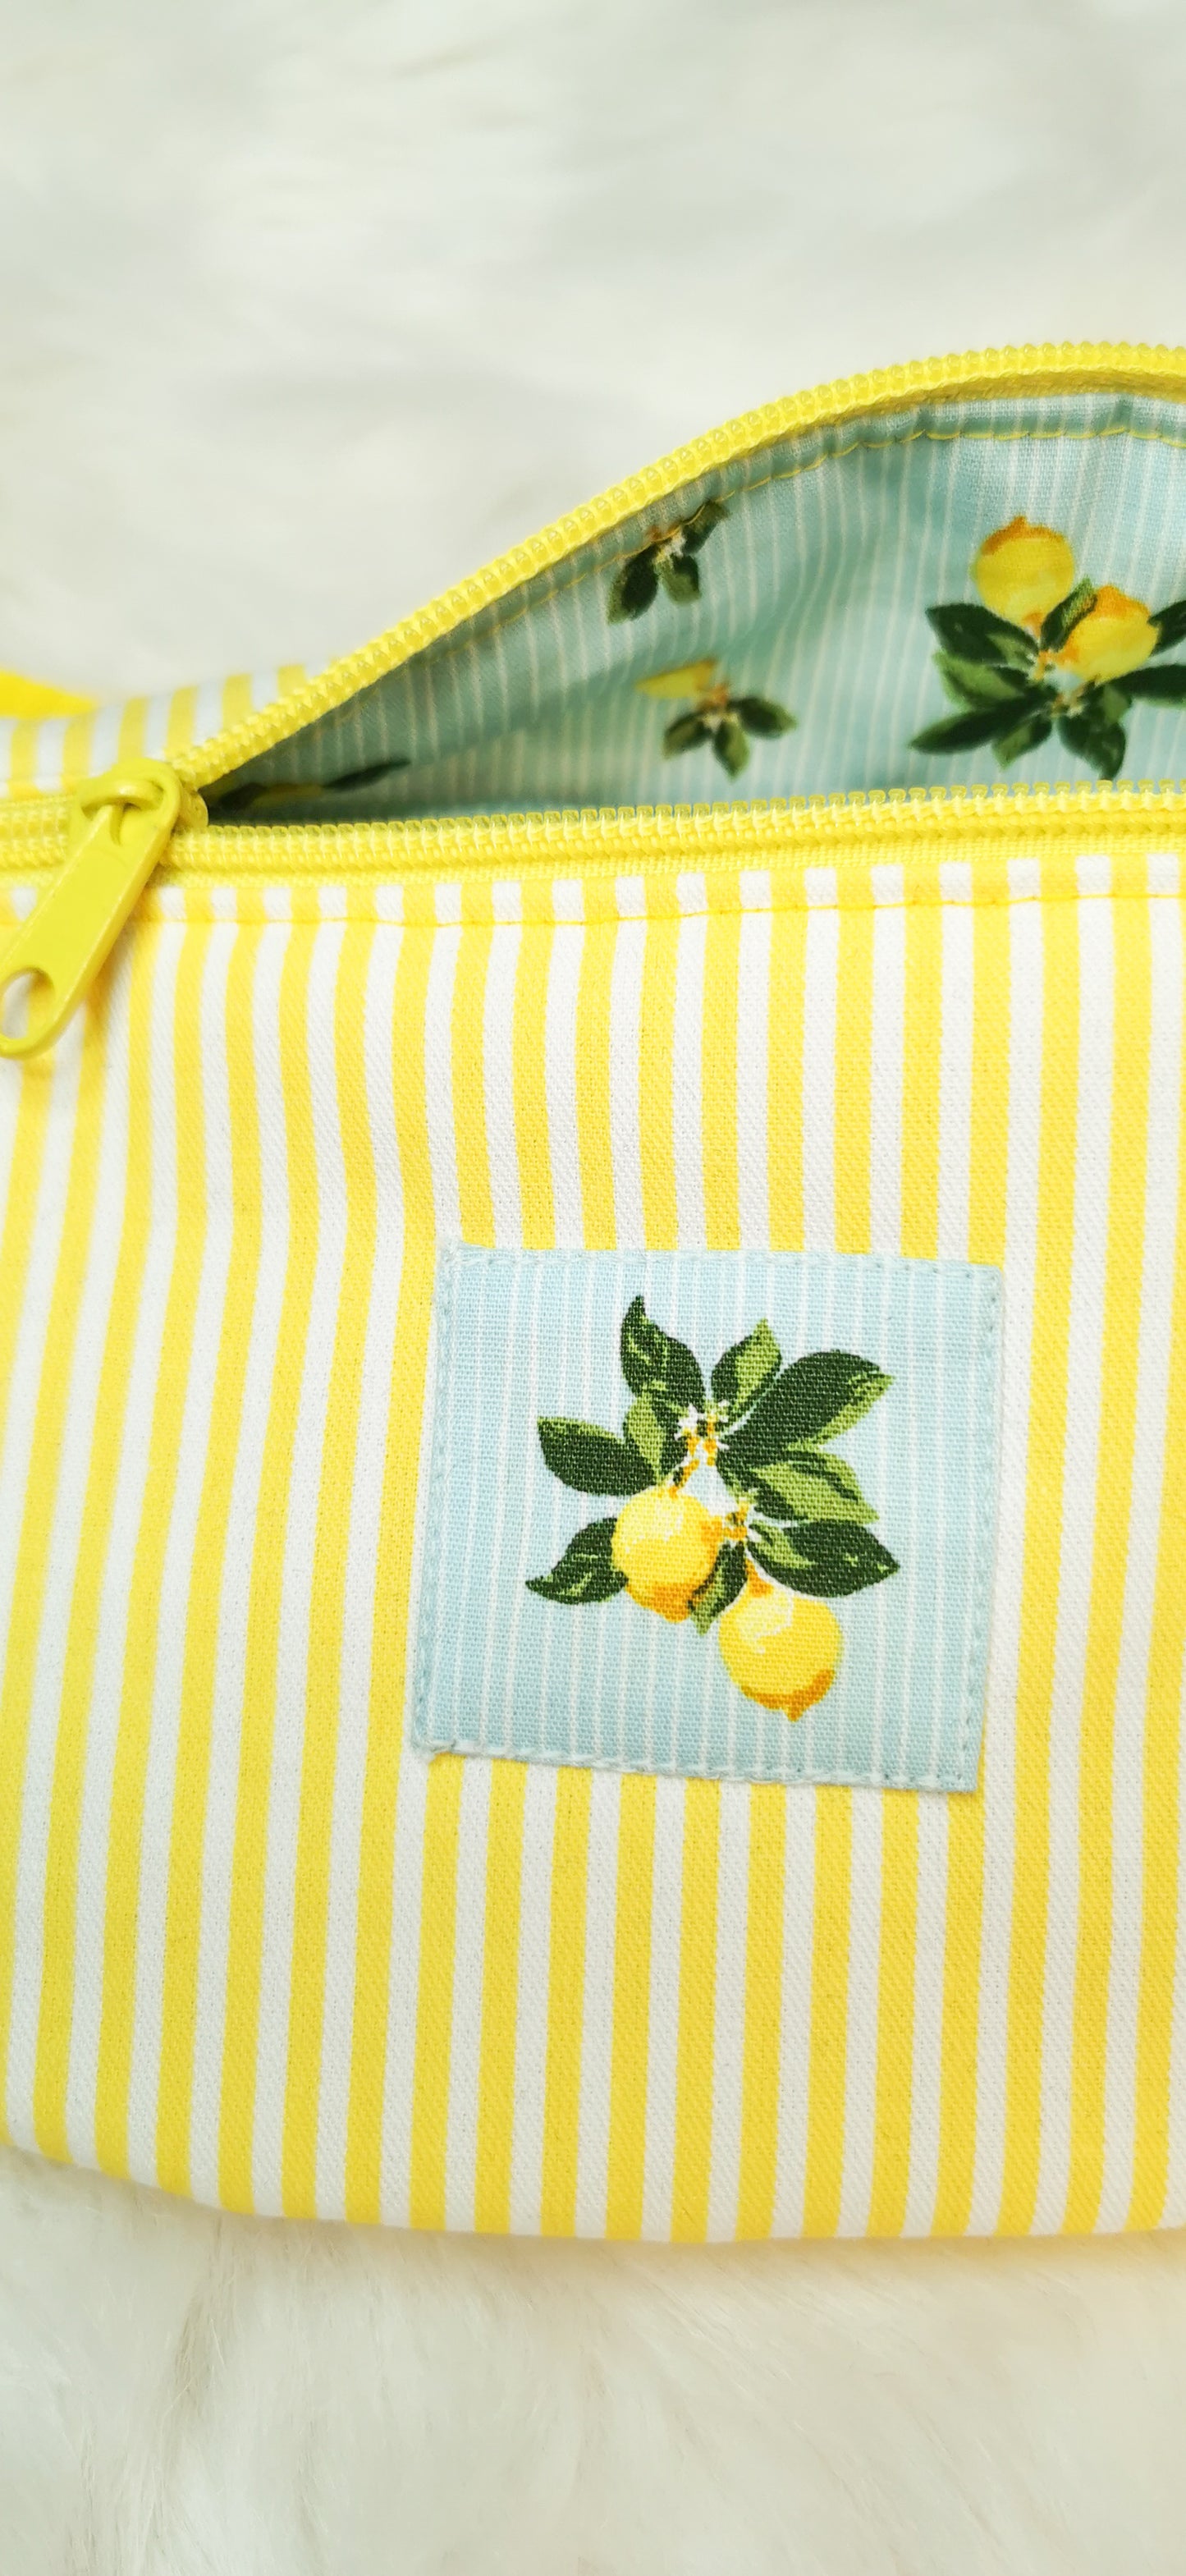 Canvas Hipbag Bauchtasche Cross Body Bag Gelb/Weiß Zitronen